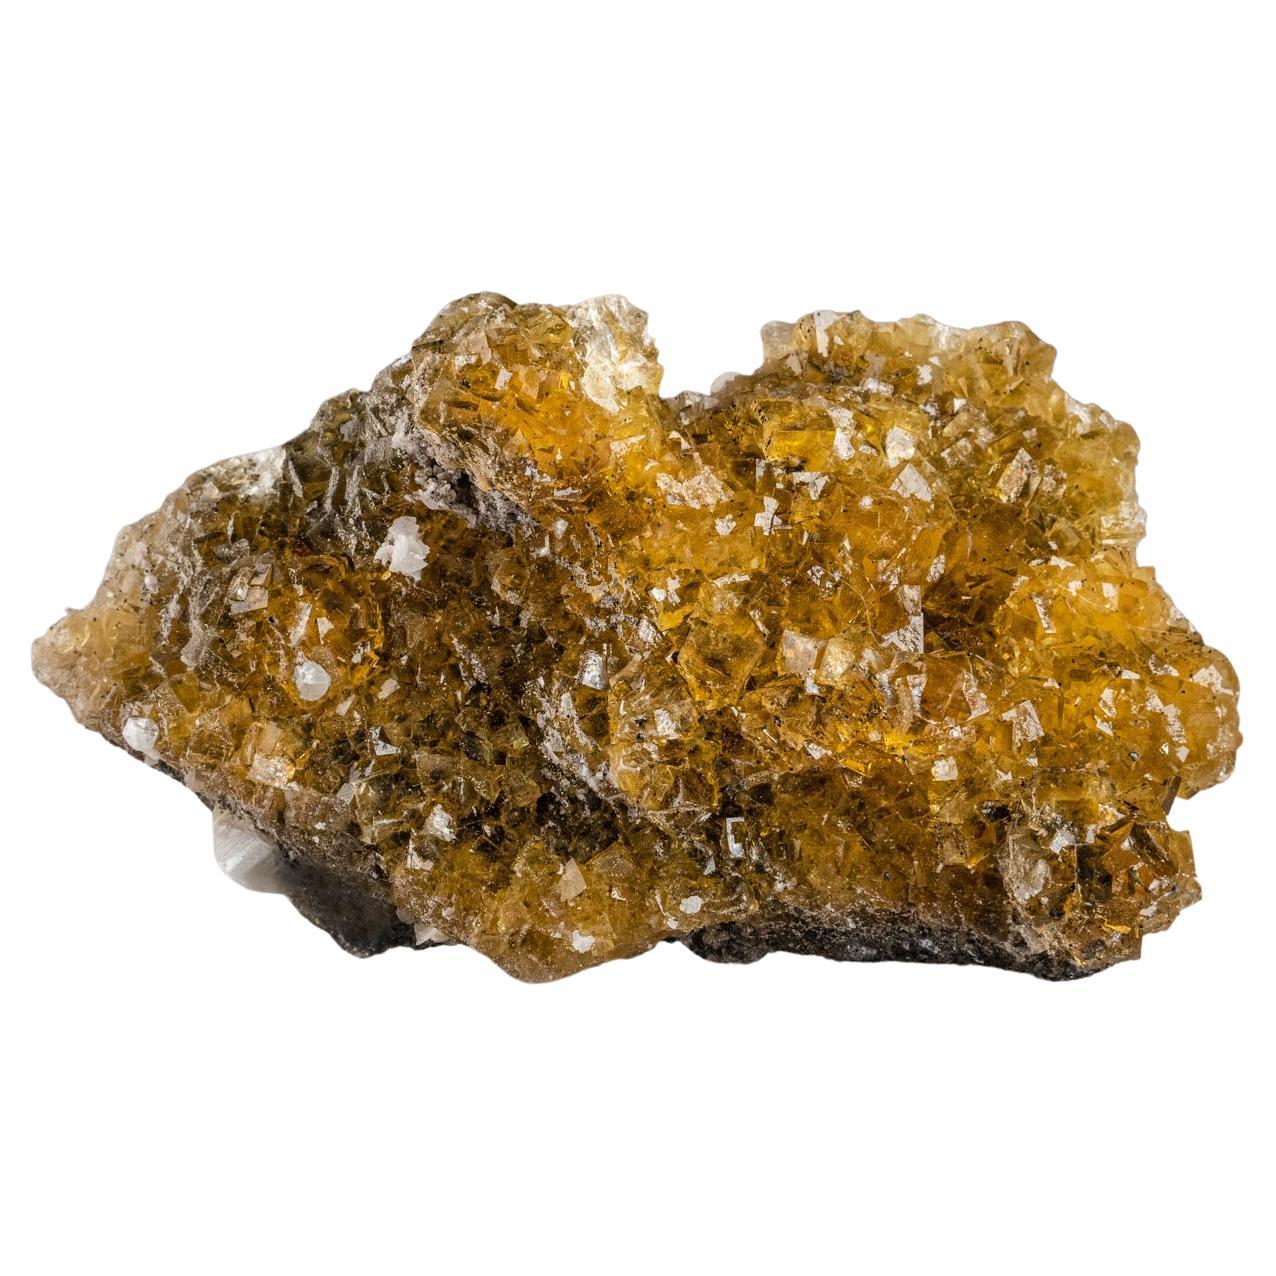 Fluorite jaune de la mine de Moscona, District de Villabona, Asturias, Espagne (1,8 lbs)